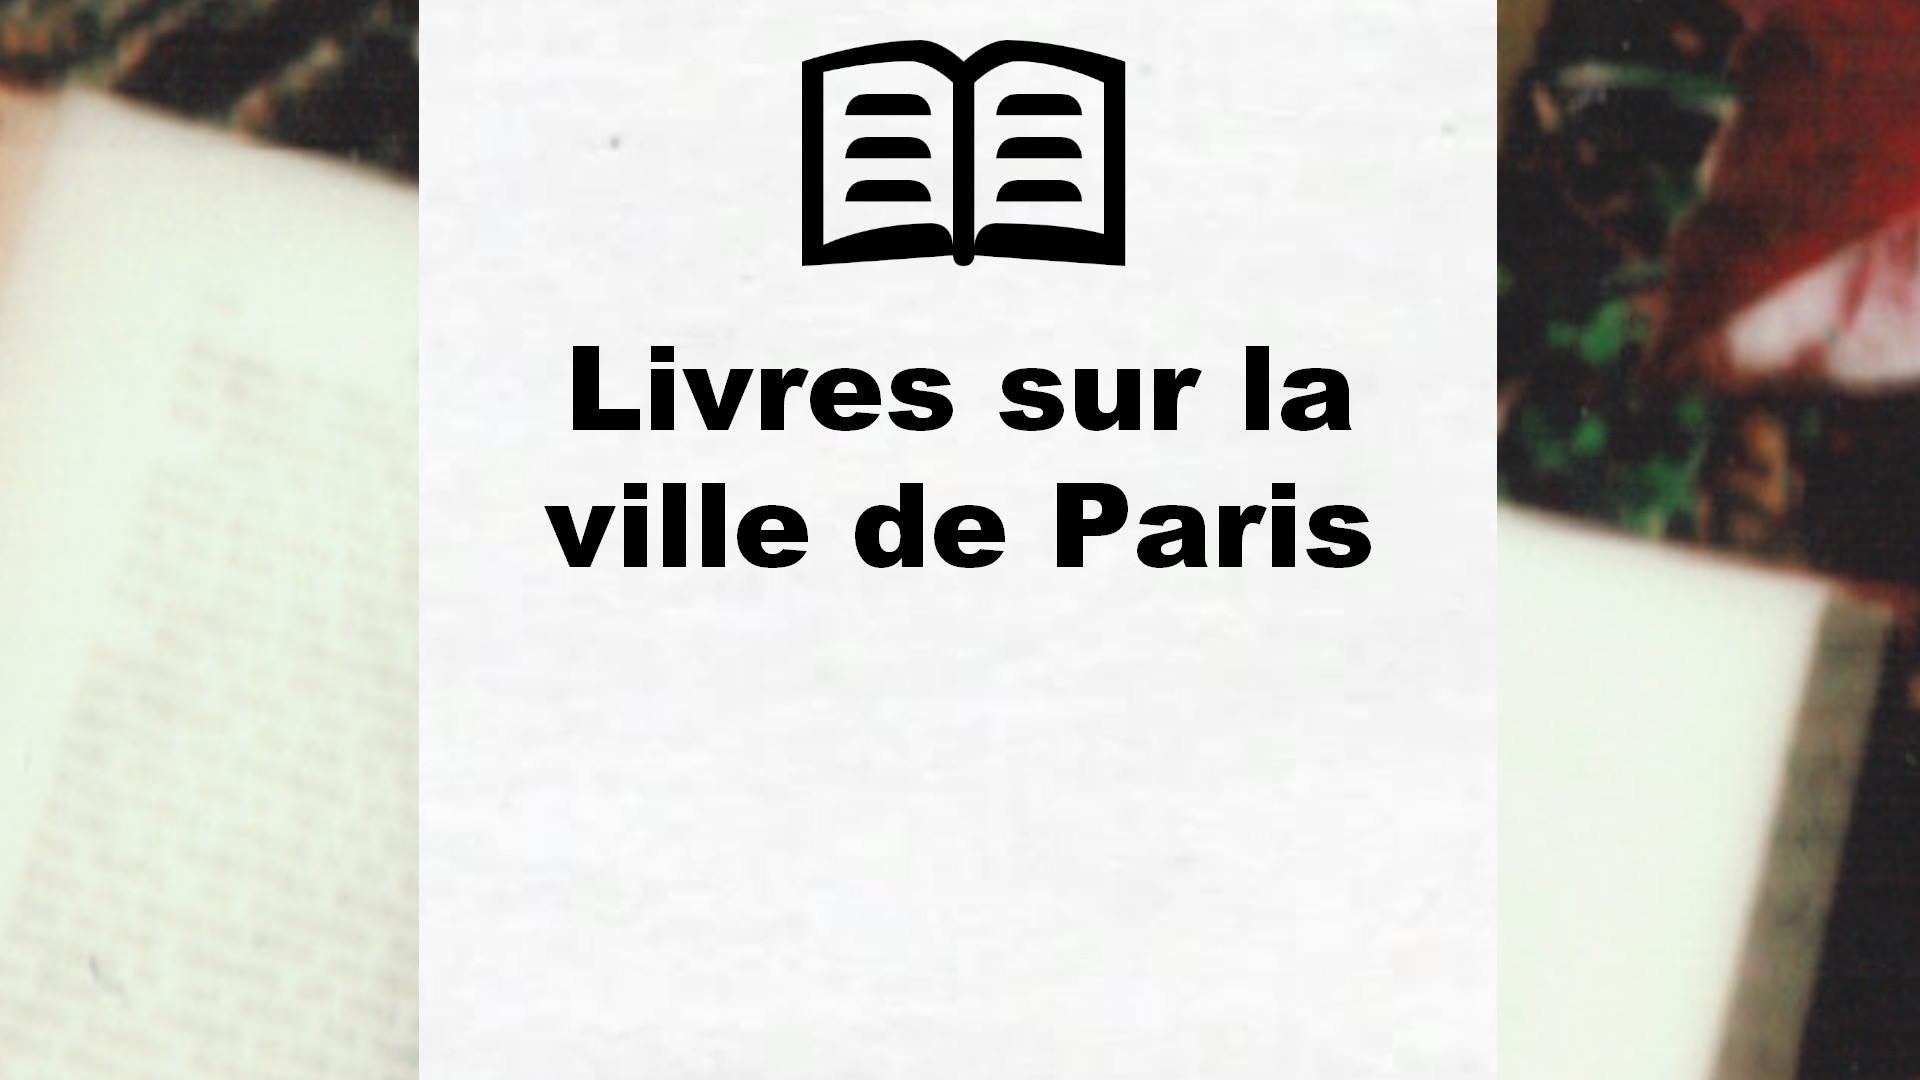 Livres sur la ville de Paris